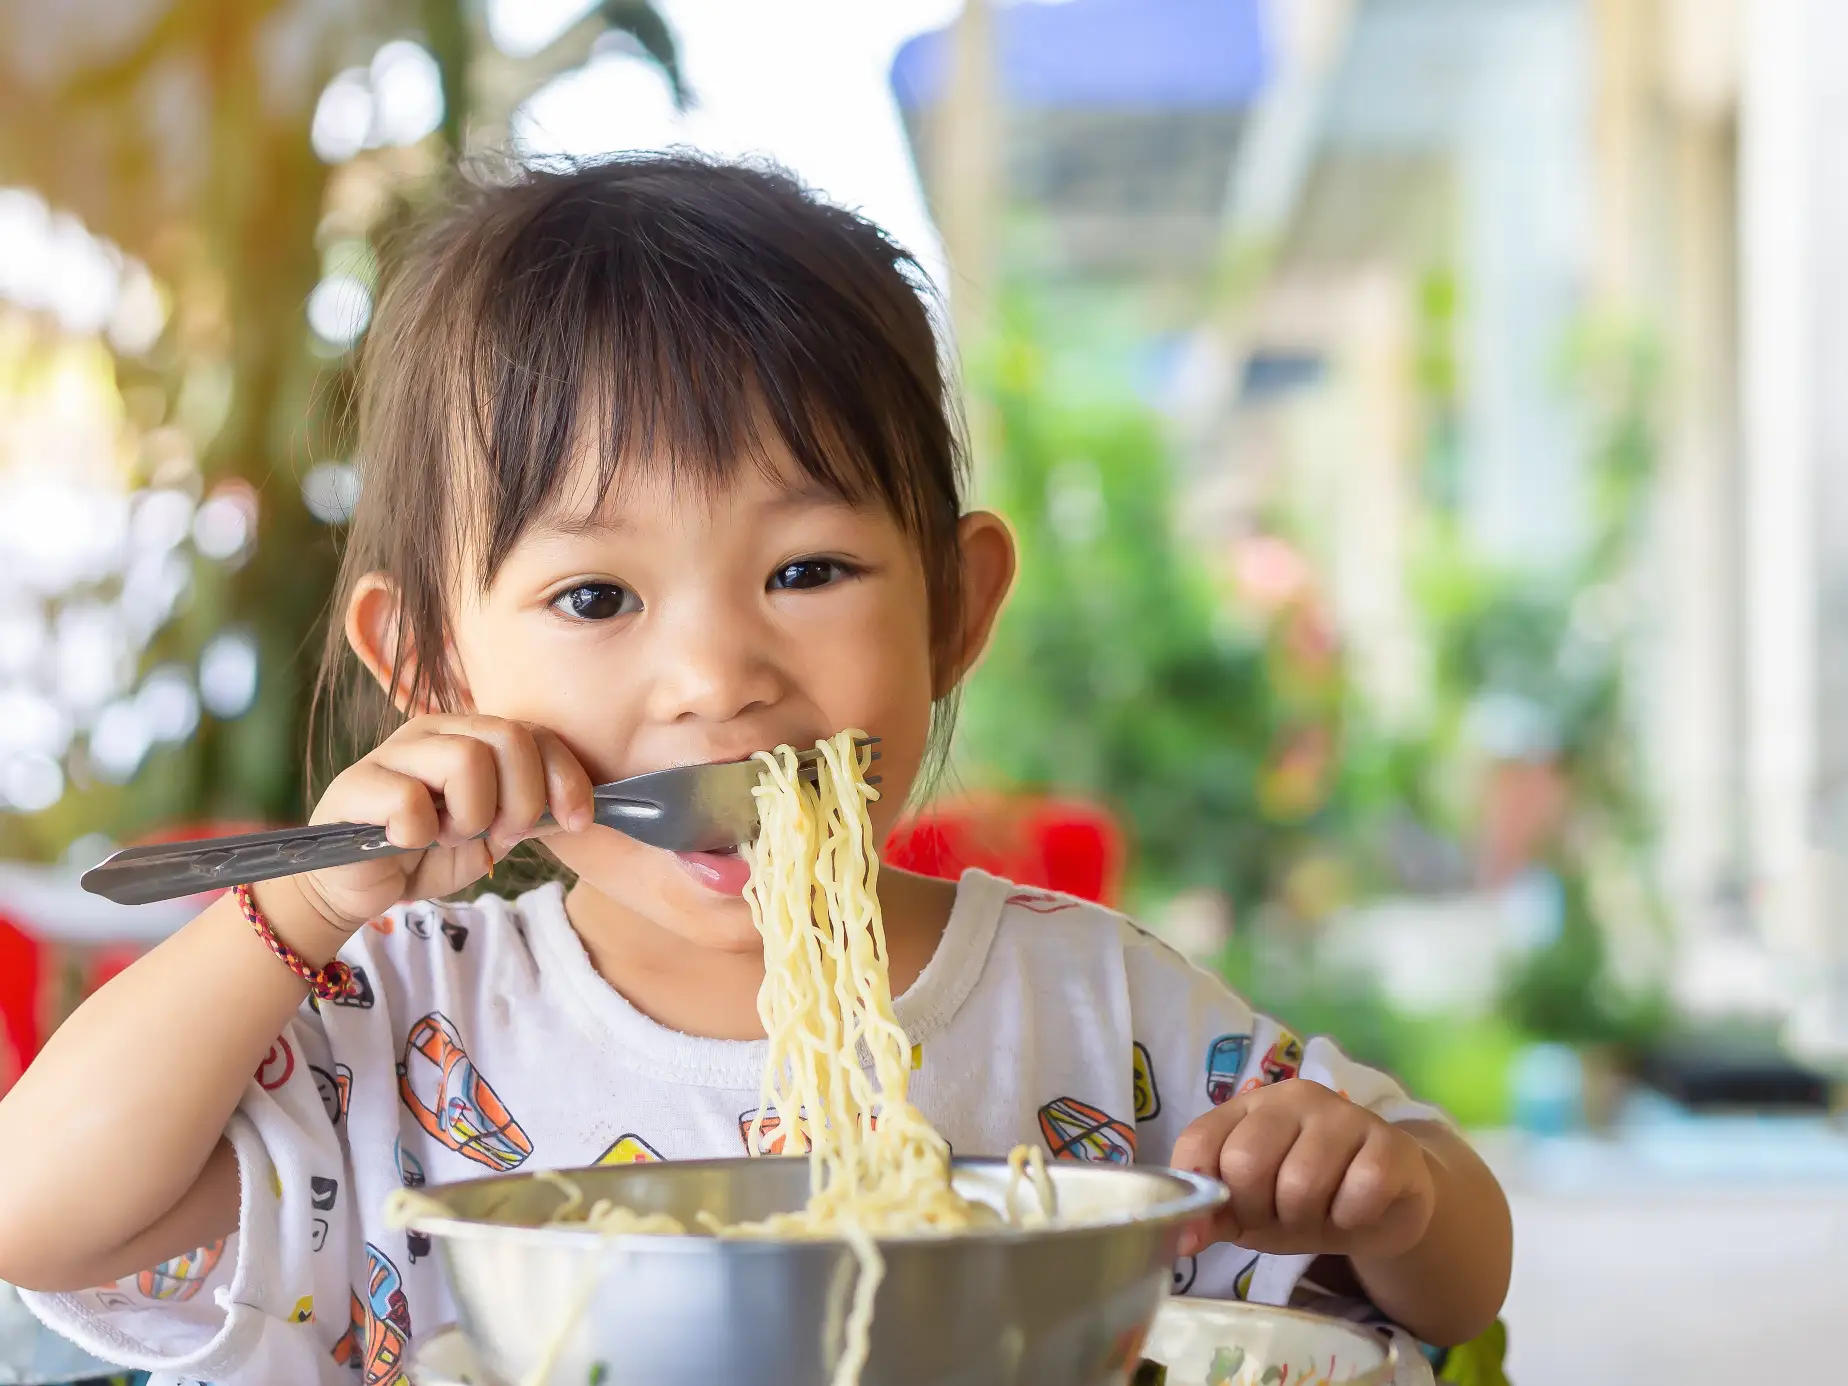 bambina di 2 anni che mangia gli spaghetti, importanza dell'alimentazione per i bambini di 2 anni